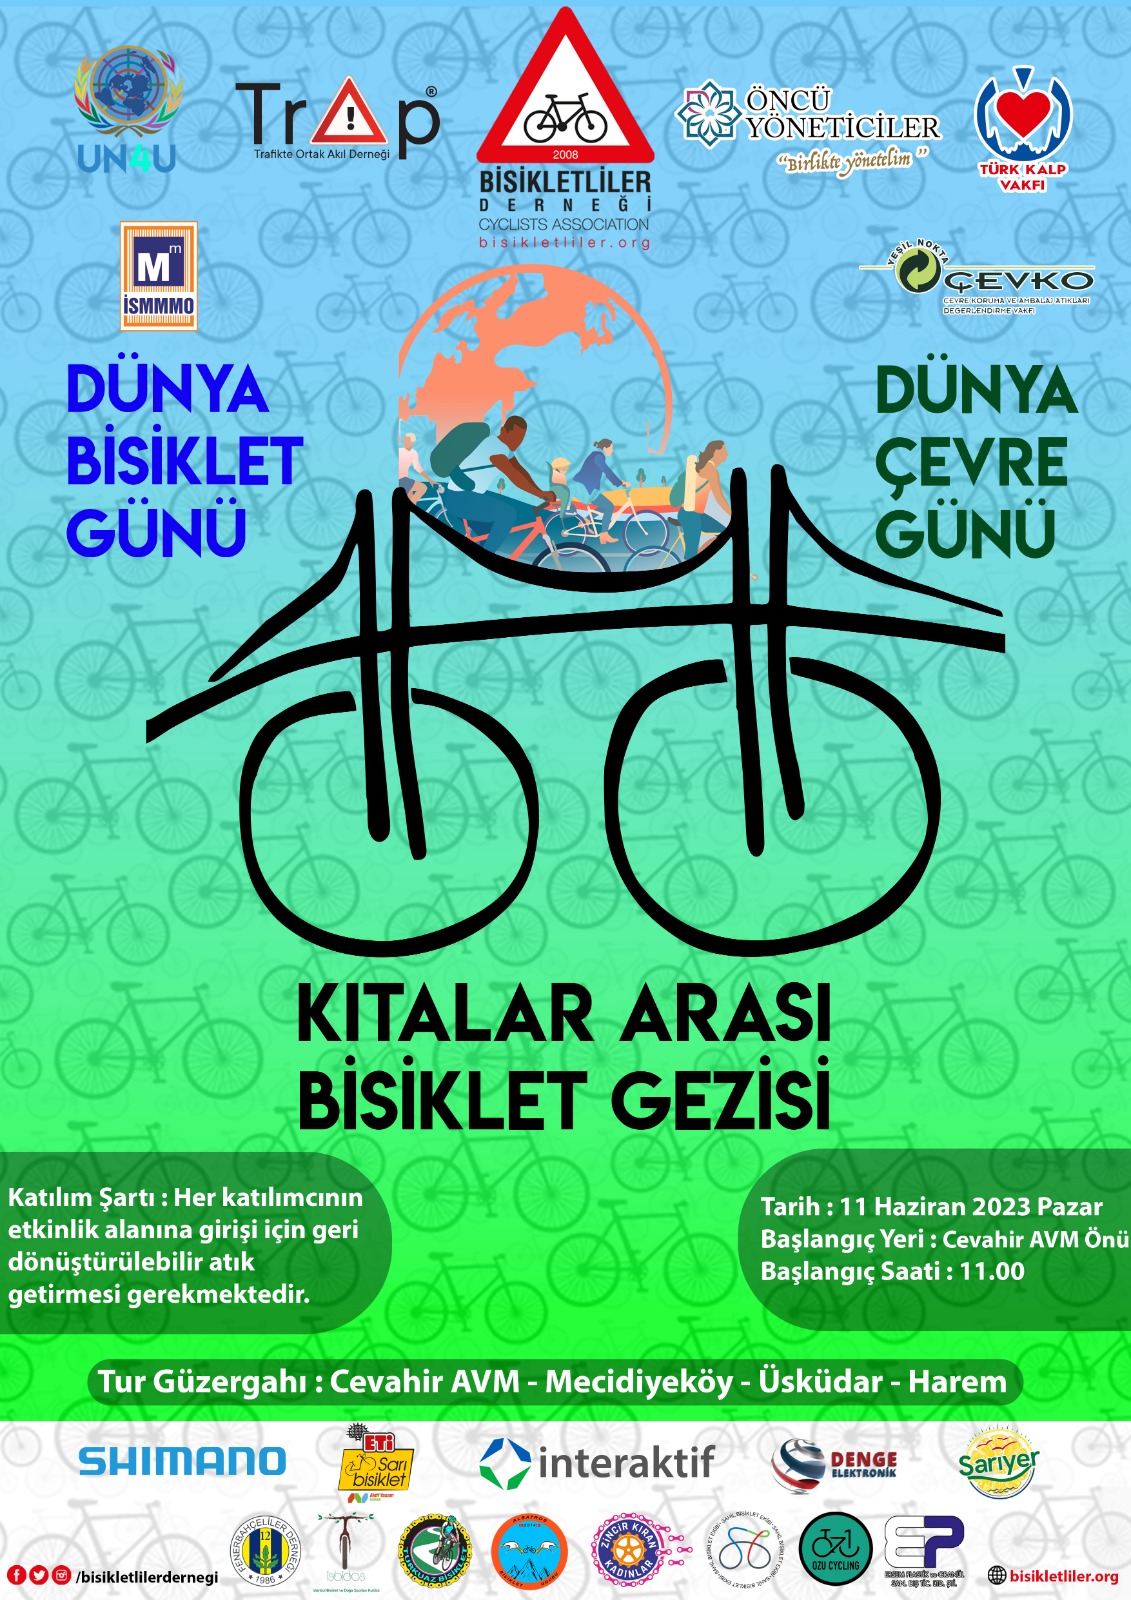 You are currently viewing Dünya Çevre Günü ve Dünya Bisiklet Günü Etkinliği